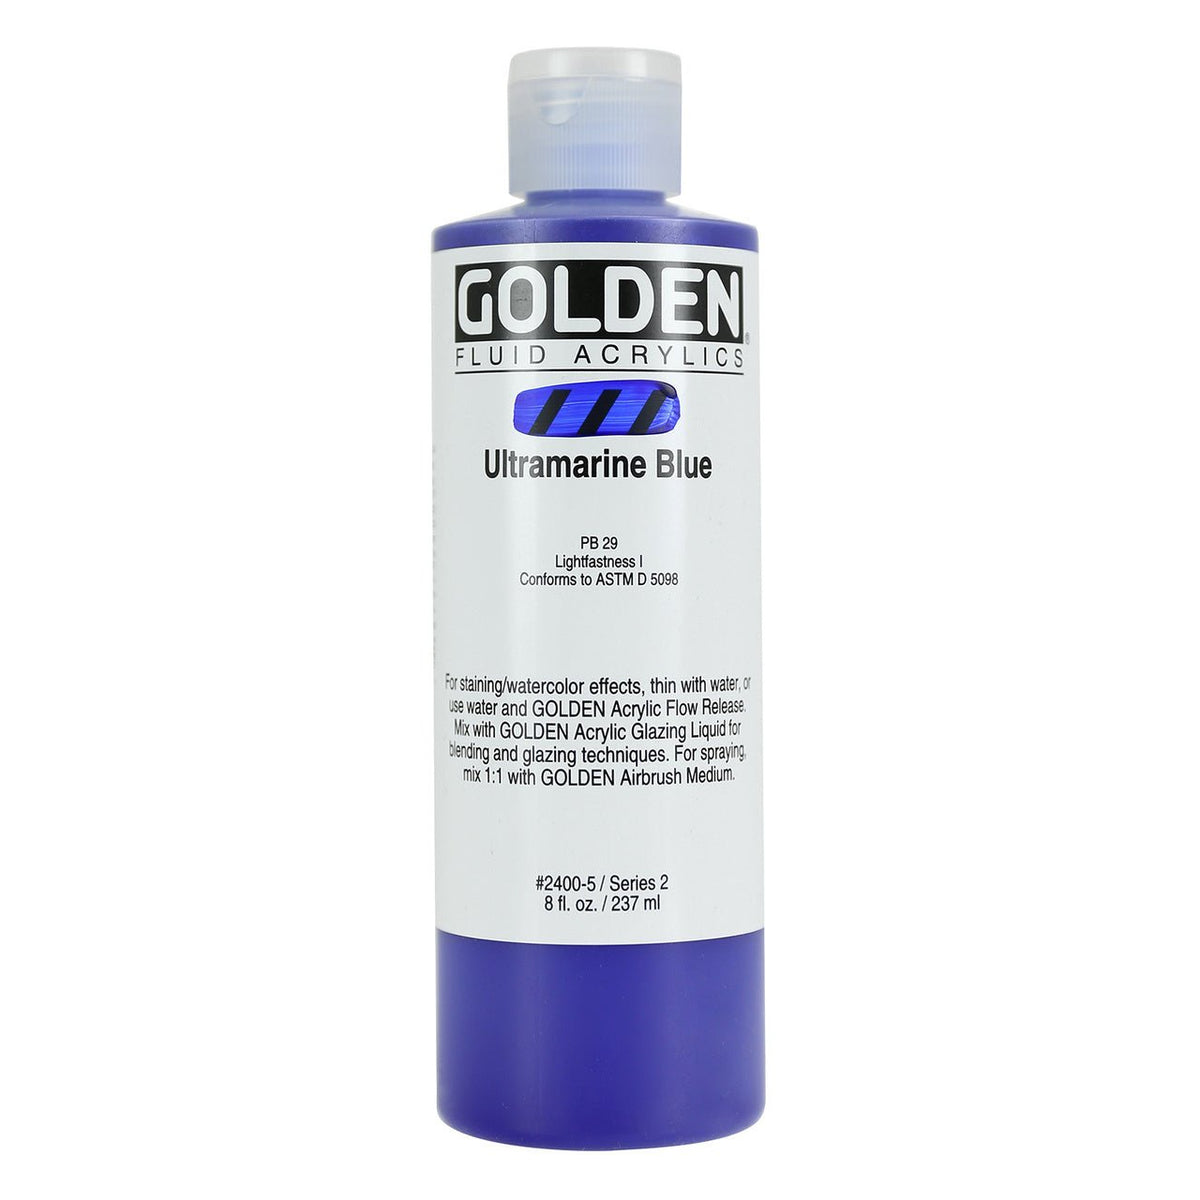 Golden Fluid Acrylic Ultramarine Blue 8 oz - merriartist.com